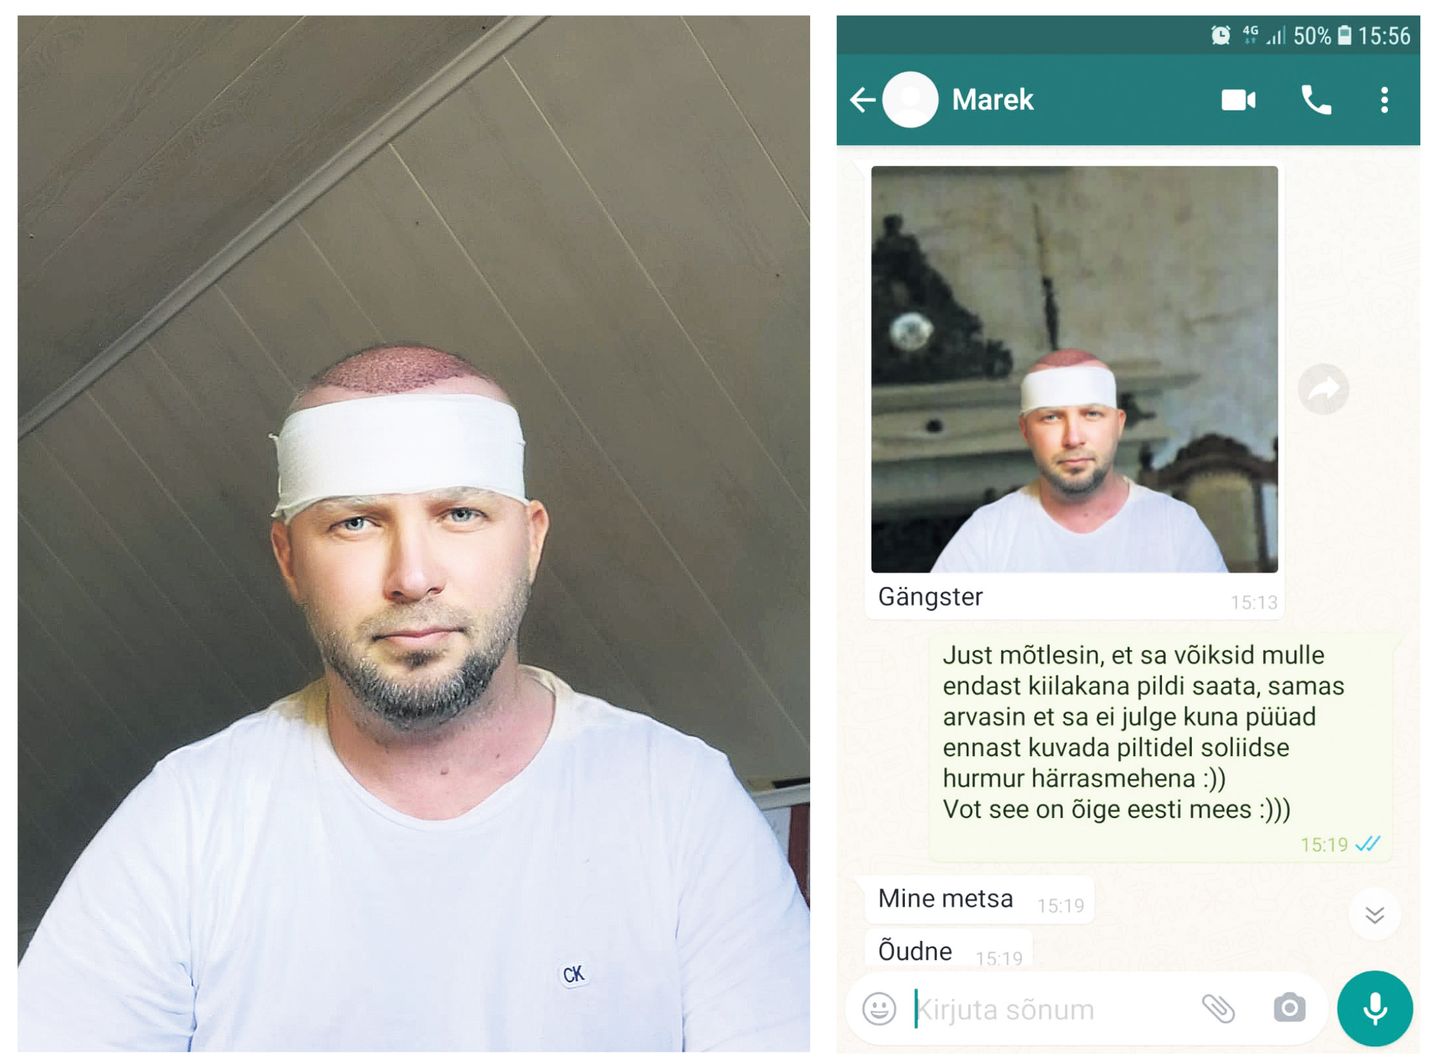 MAREK TAMM saatis “sõbrale” foto, kus ta on Rootsis erahaiglas “sünnimärgi operatsioonil”. Tegelikult on pilt tehtud kodus ema juures katusekorrusel.